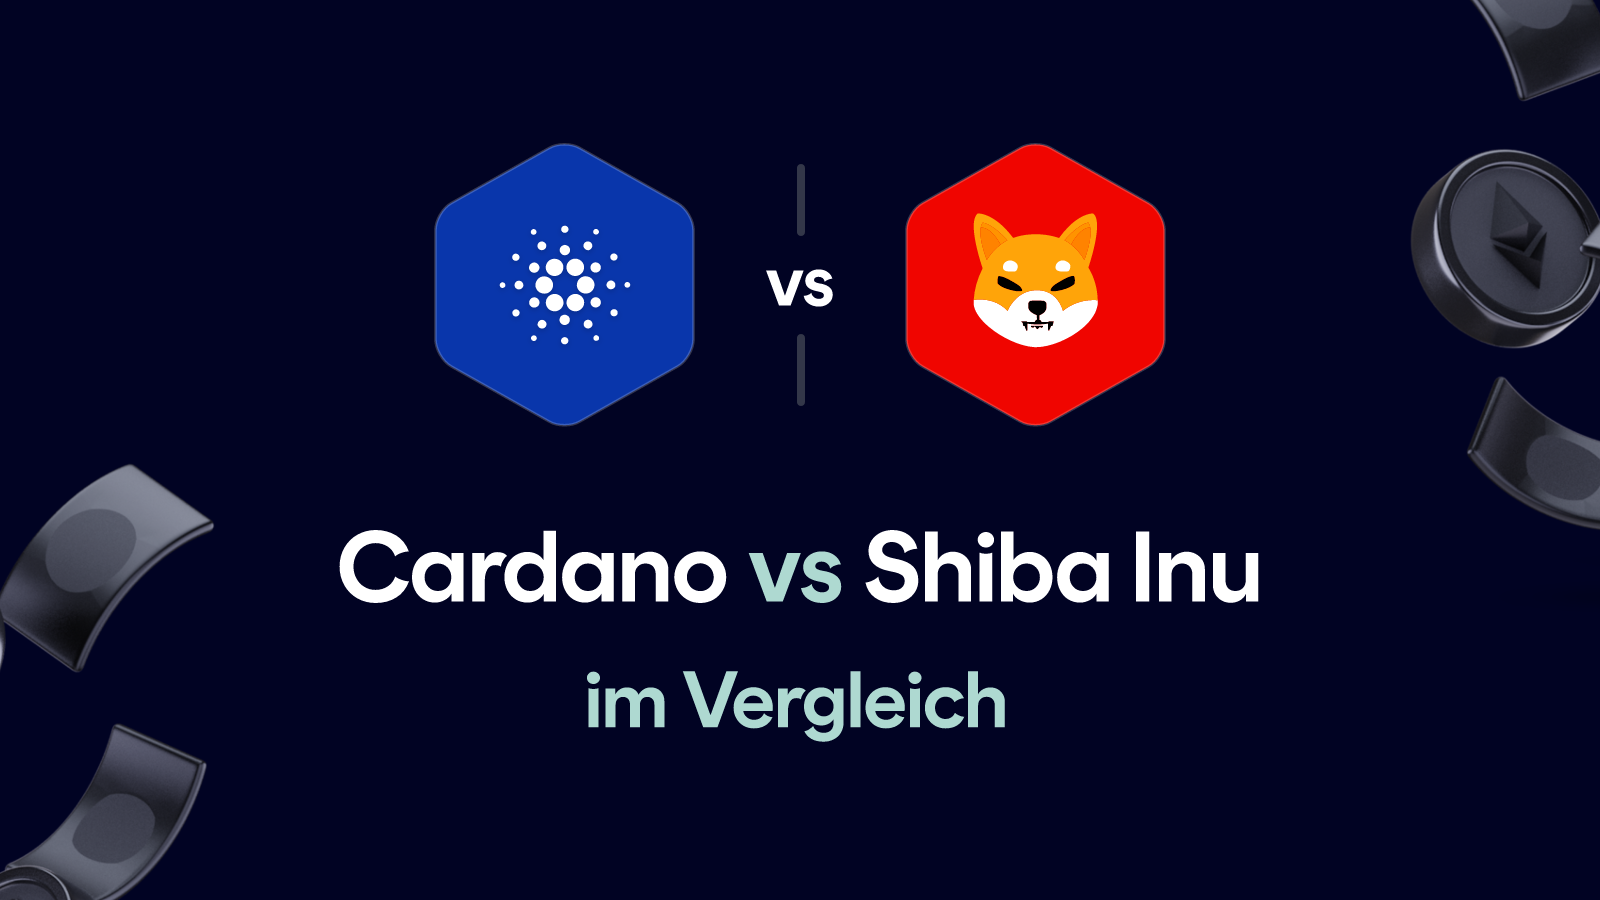 Cardano vs Shiba Inu